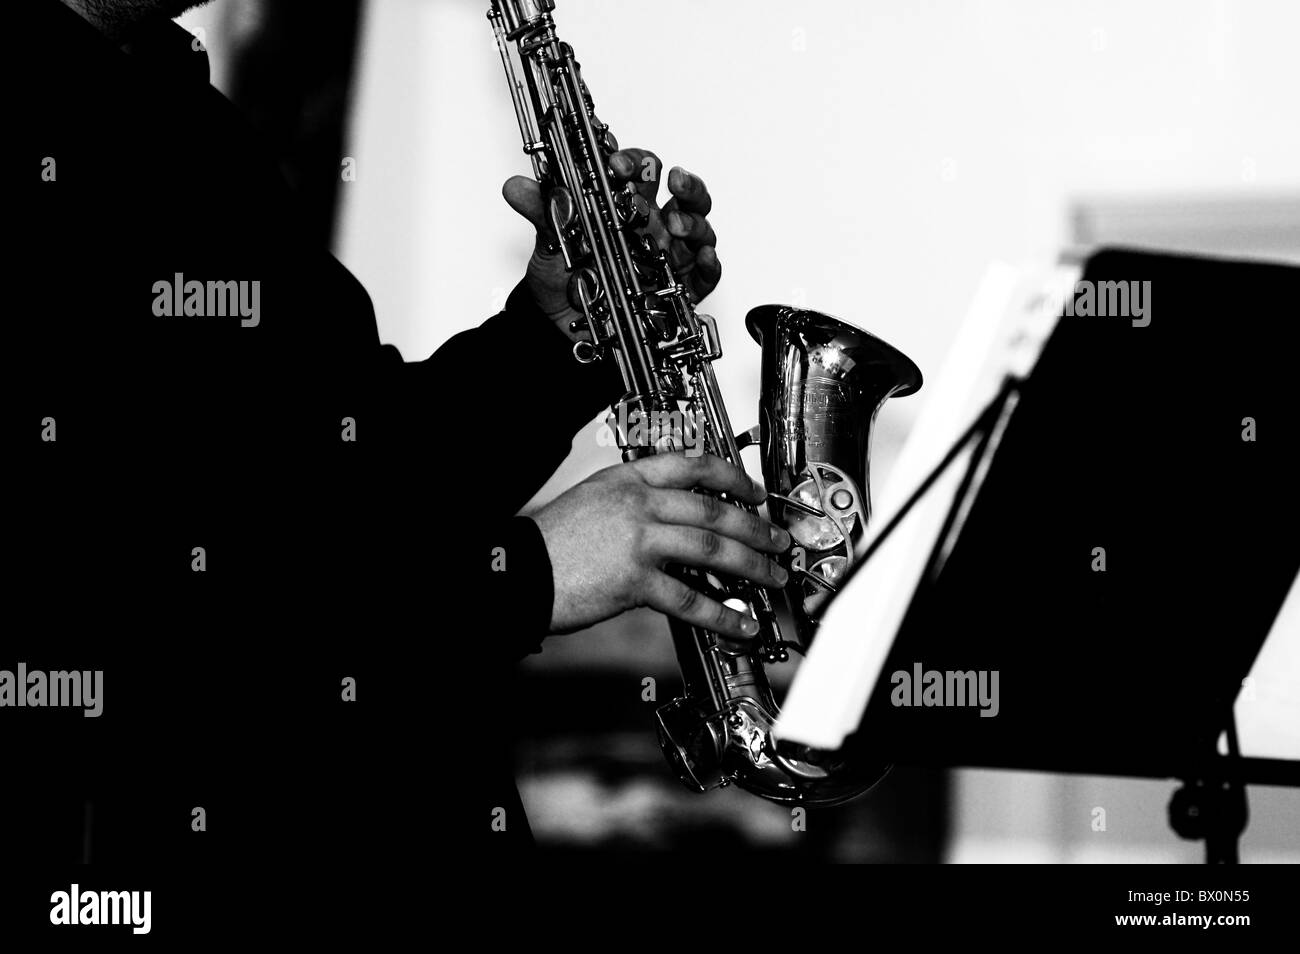 Musicien joue du saxophone. saxophone brille en surface et brillant . Seulement Sax, de la musique et mains de joueur. Nostalgie Banque D'Images